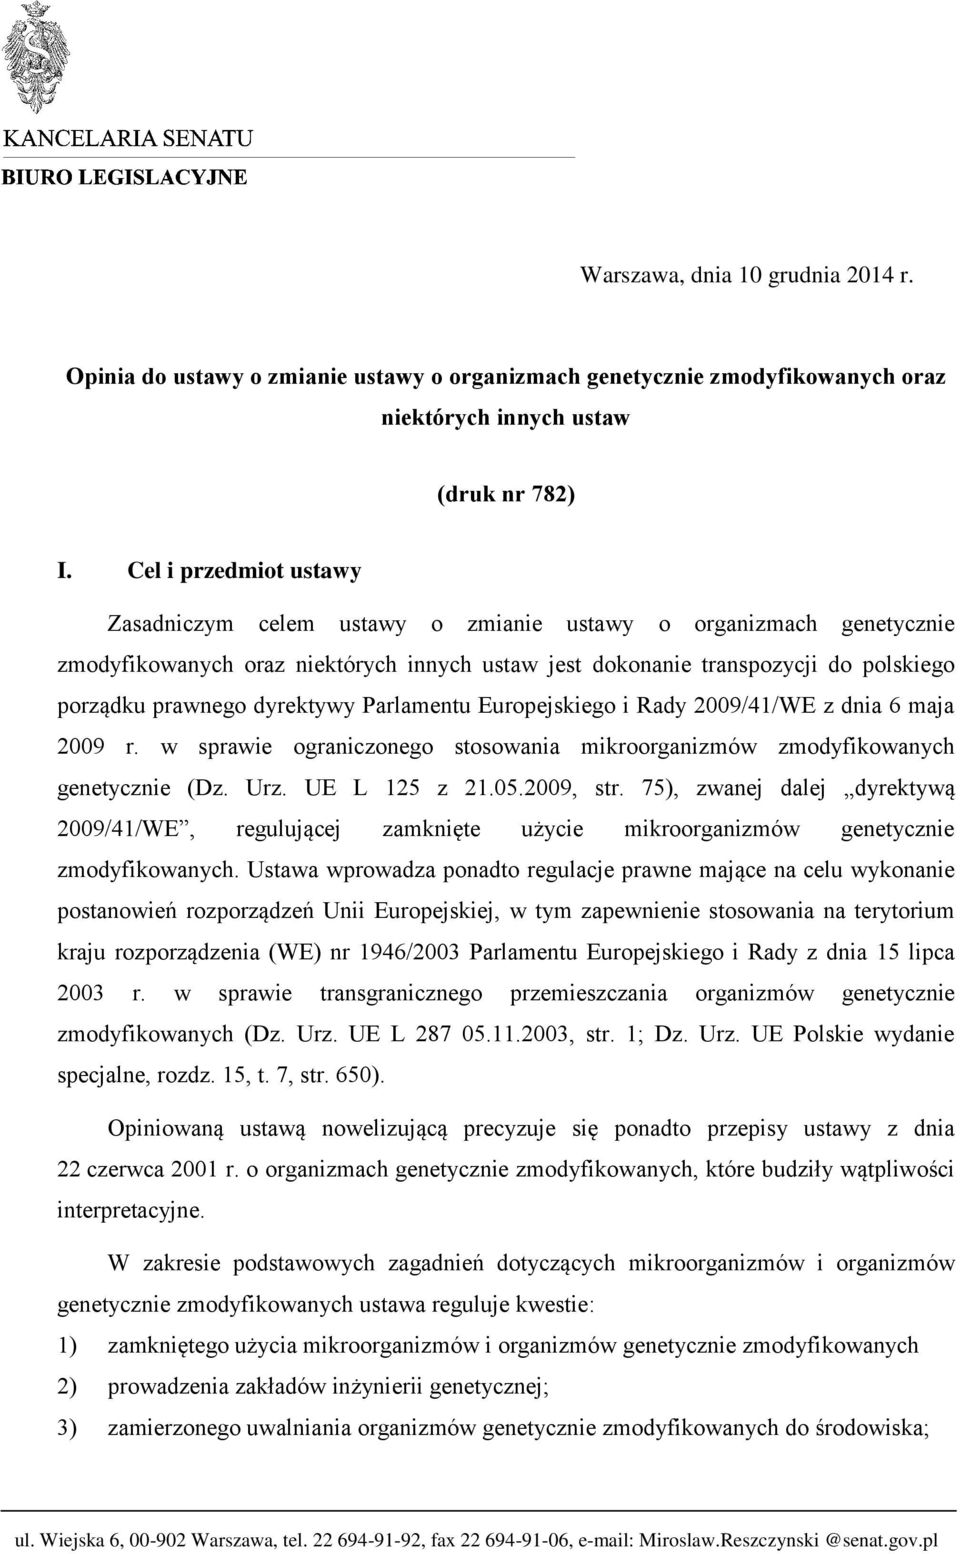 dyrektywy Parlamentu Europejskiego i Rady 2009/41/WE z dnia 6 maja 2009 r. w sprawie ograniczonego stosowania mikroorganizmów zmodyfikowanych genetycznie (Dz. Urz. UE L 125 z 21.05.2009, str.